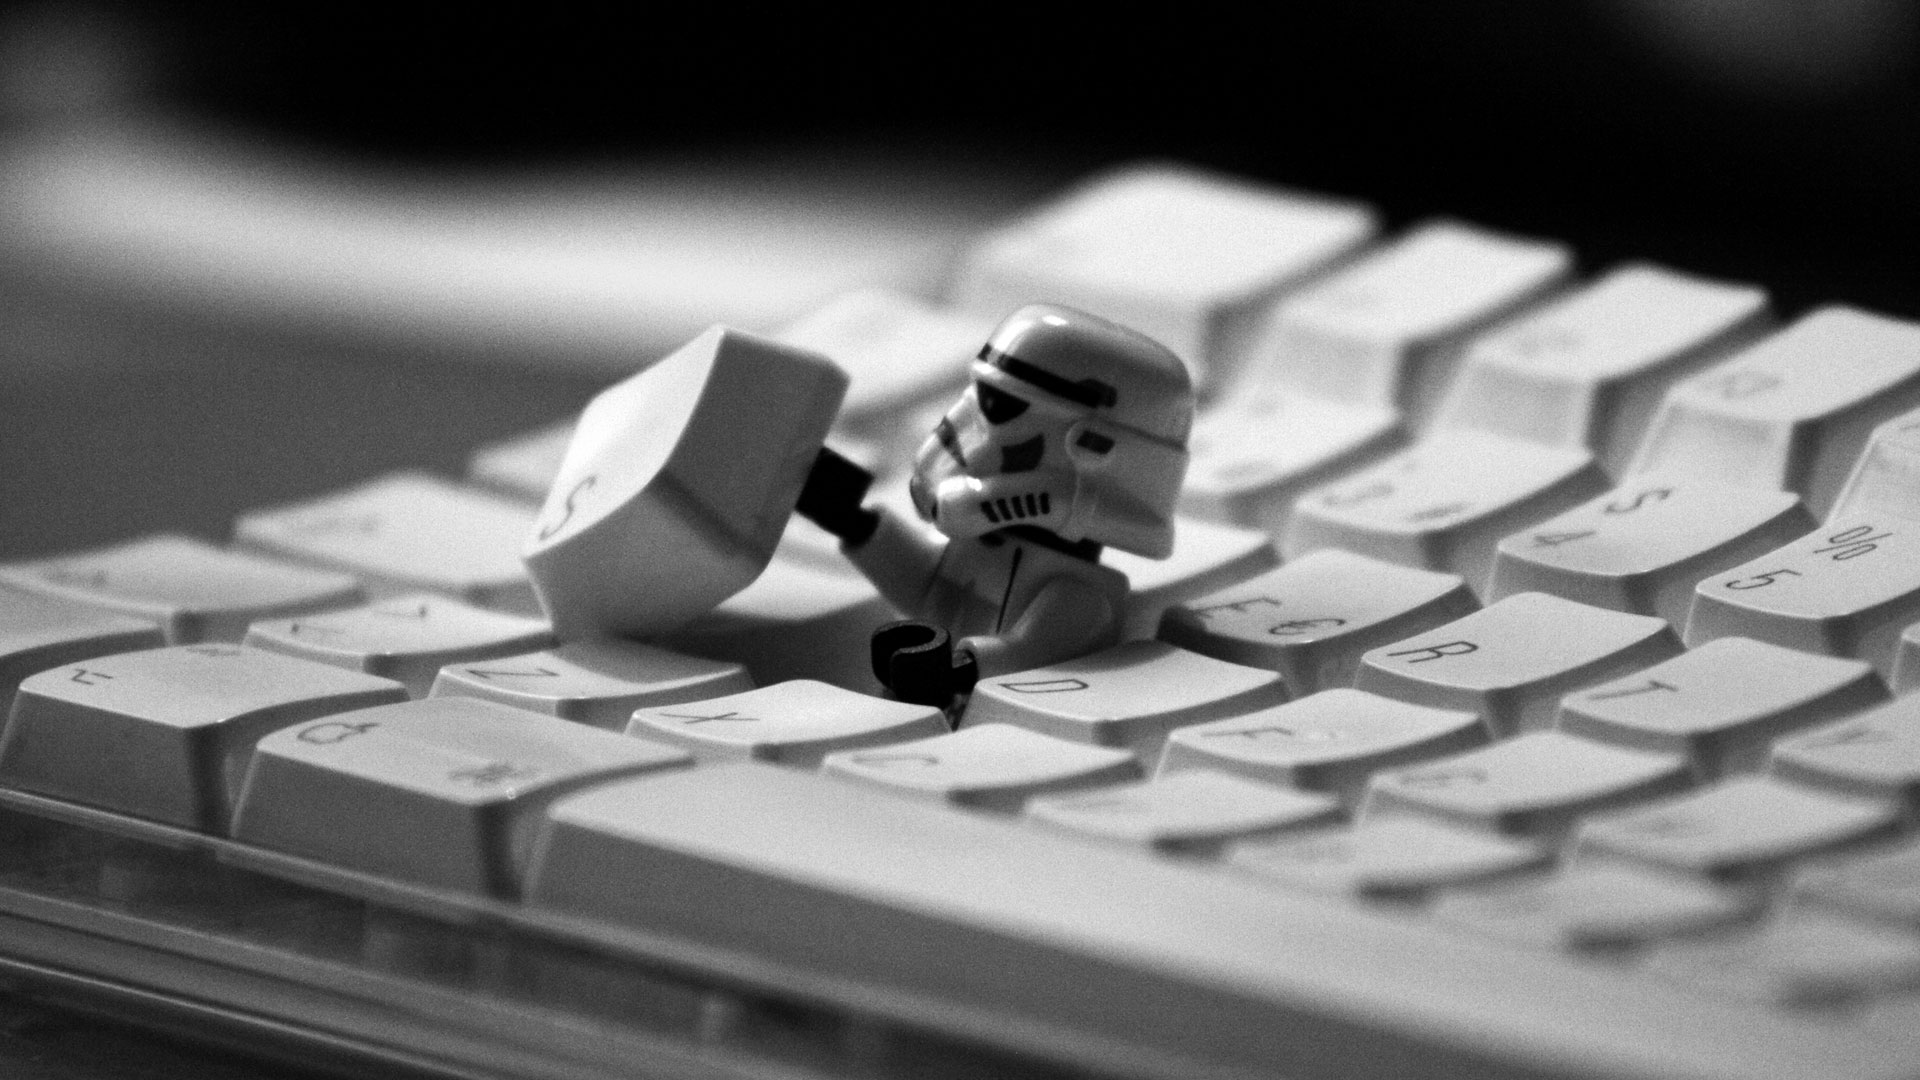 Lego Star Wars Keyboard - HD Wallpaper 